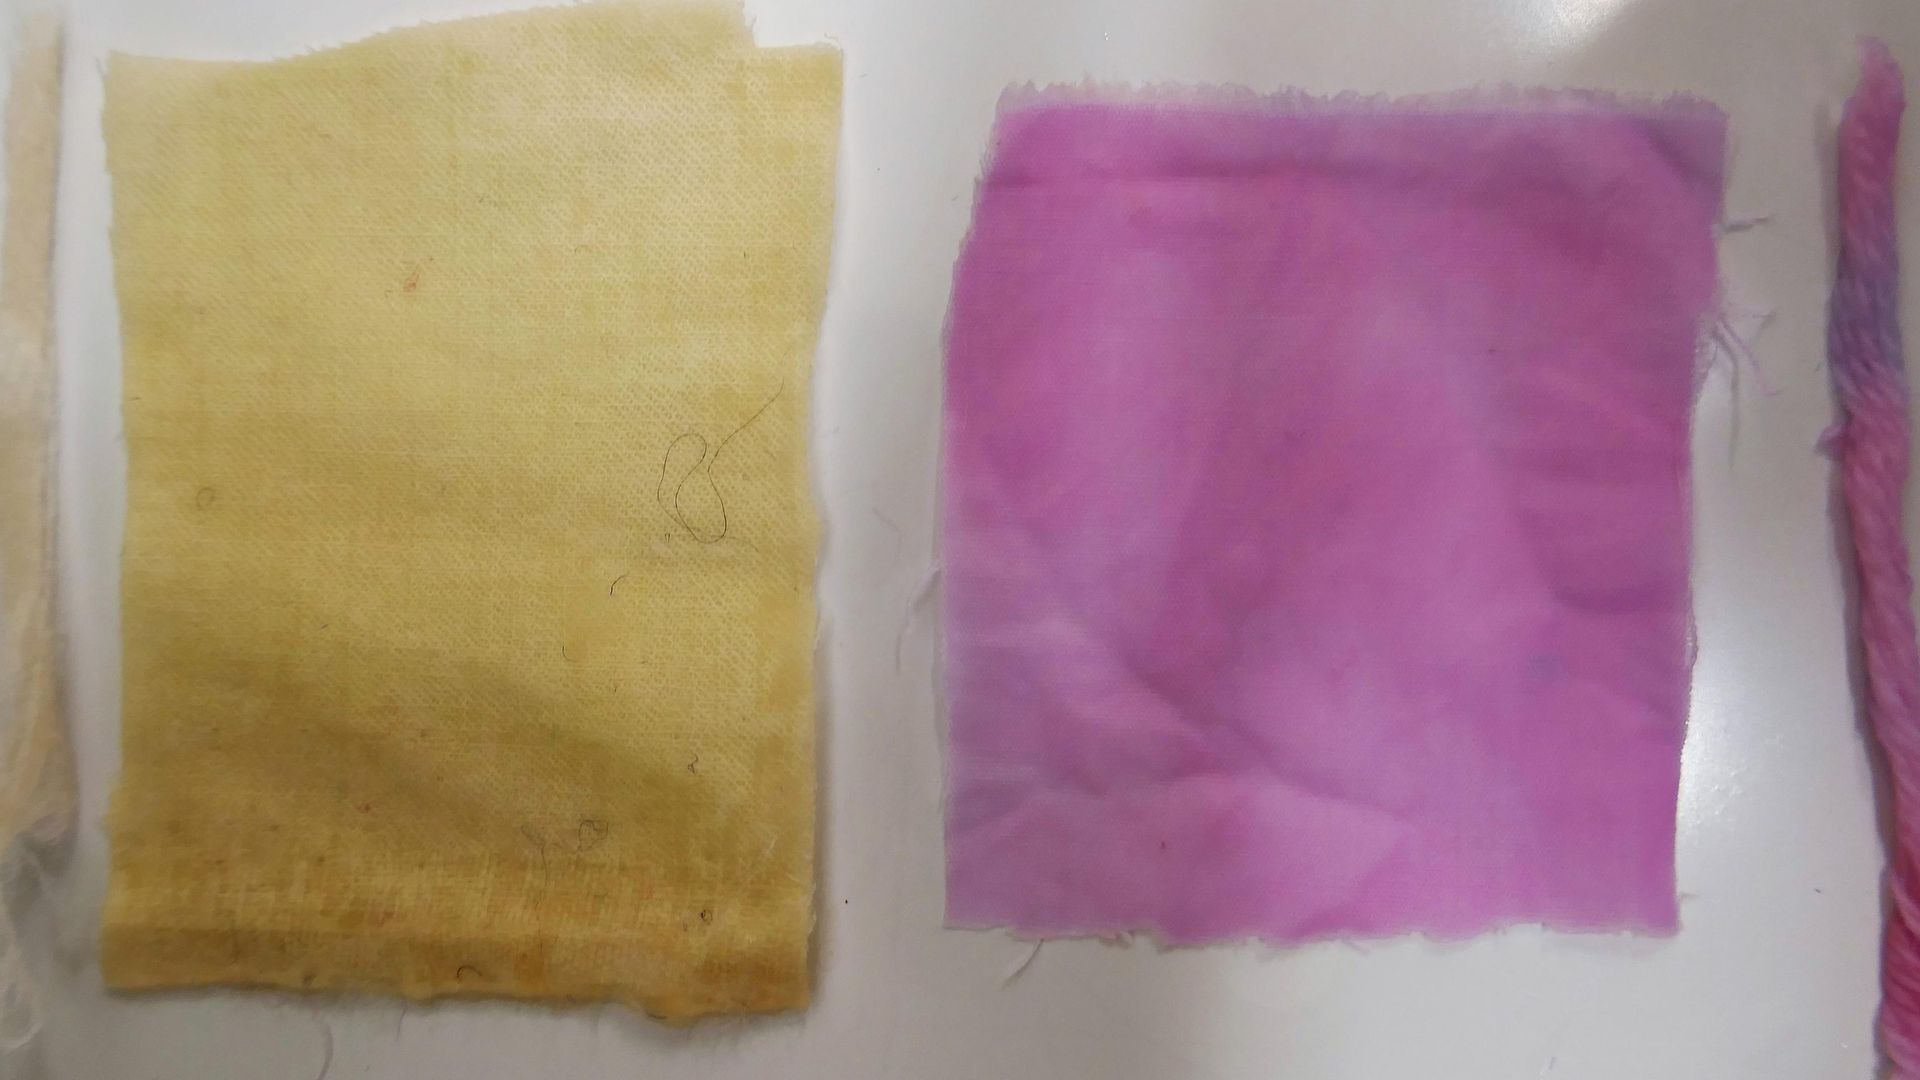 żółty i różowy kolor tkaniny obok siebie